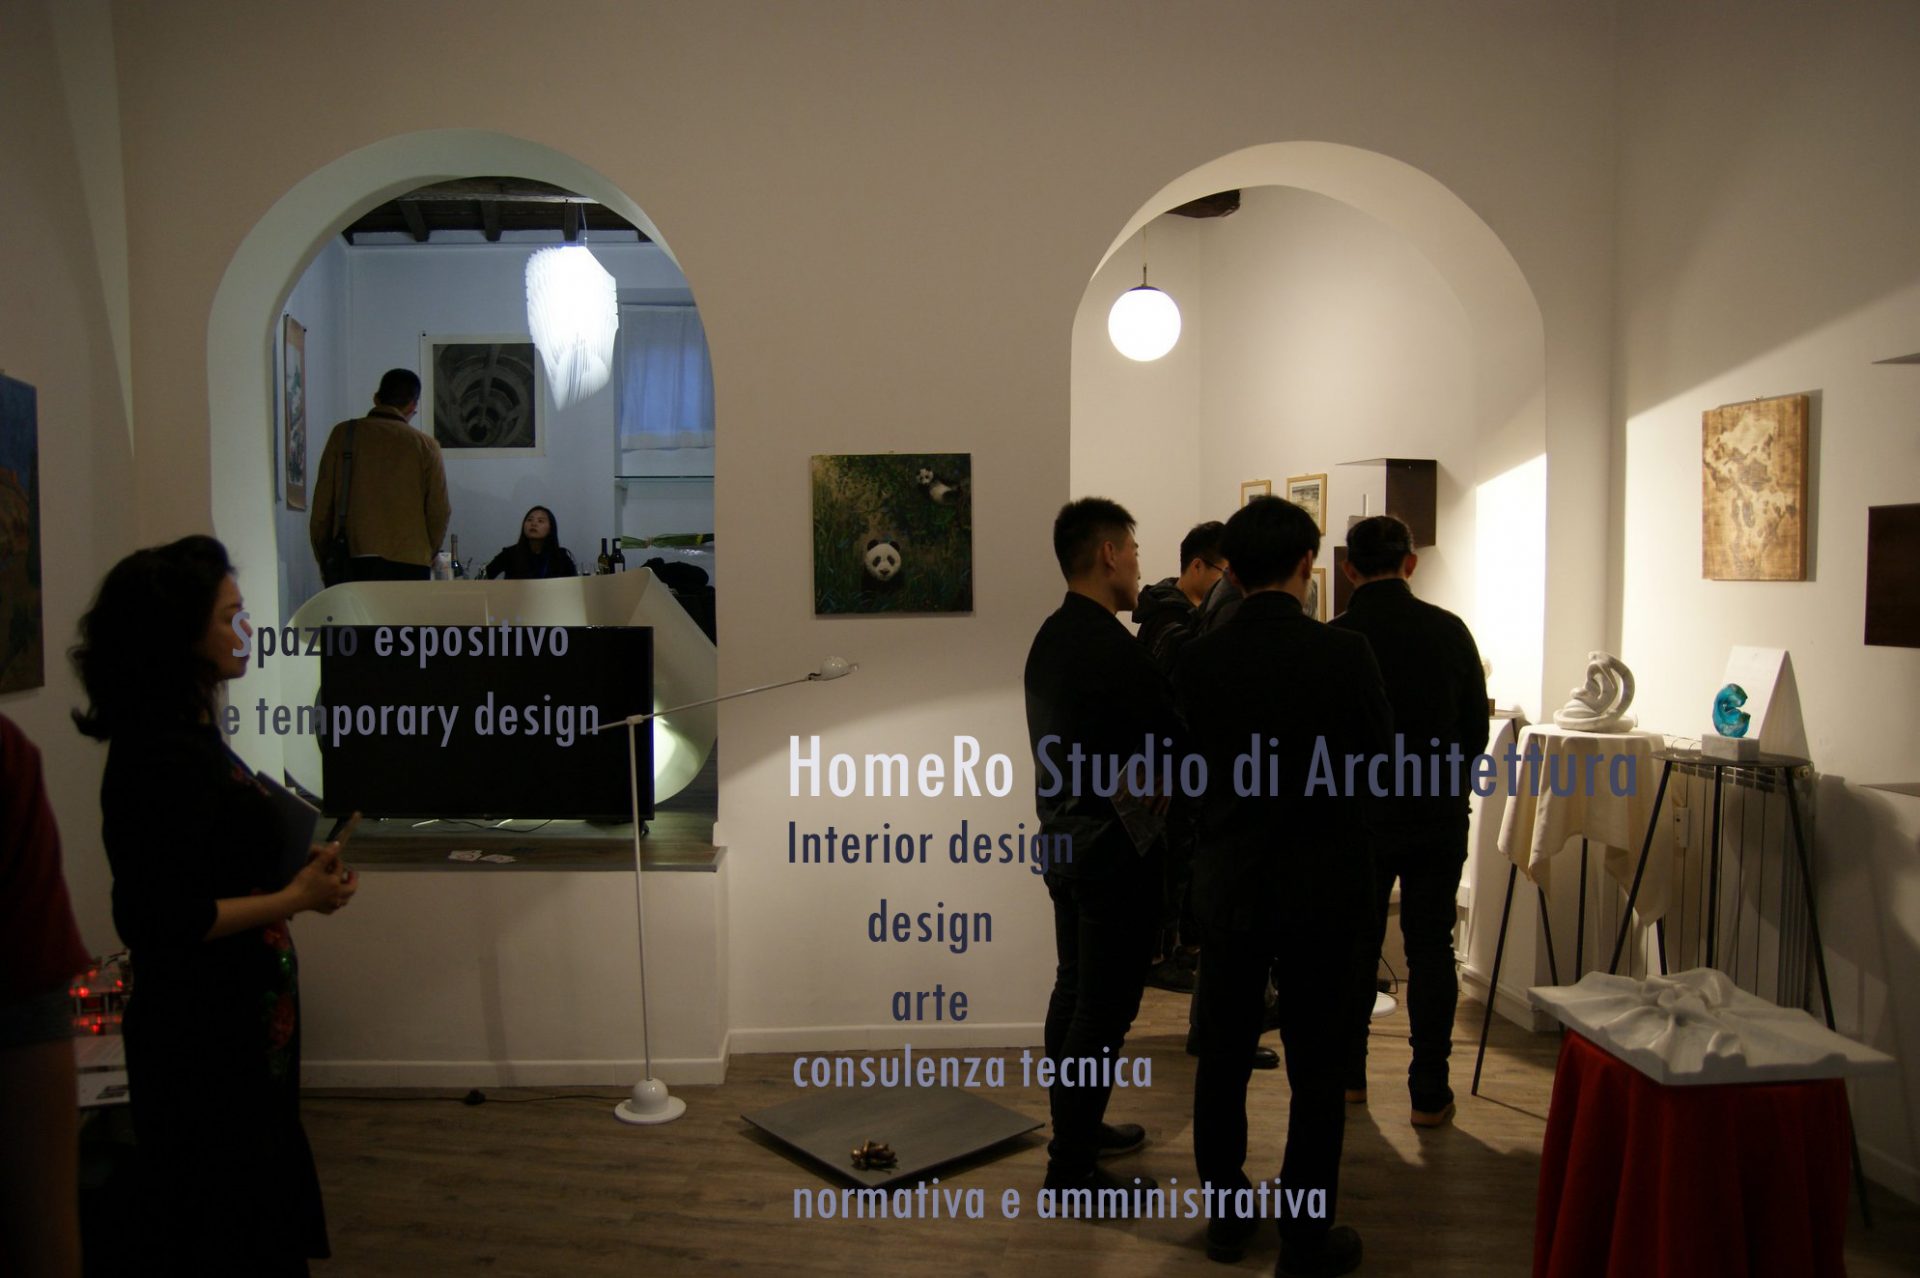 Nella foto si vede lo studio in una delle esposizioni legate all'arte e al design.